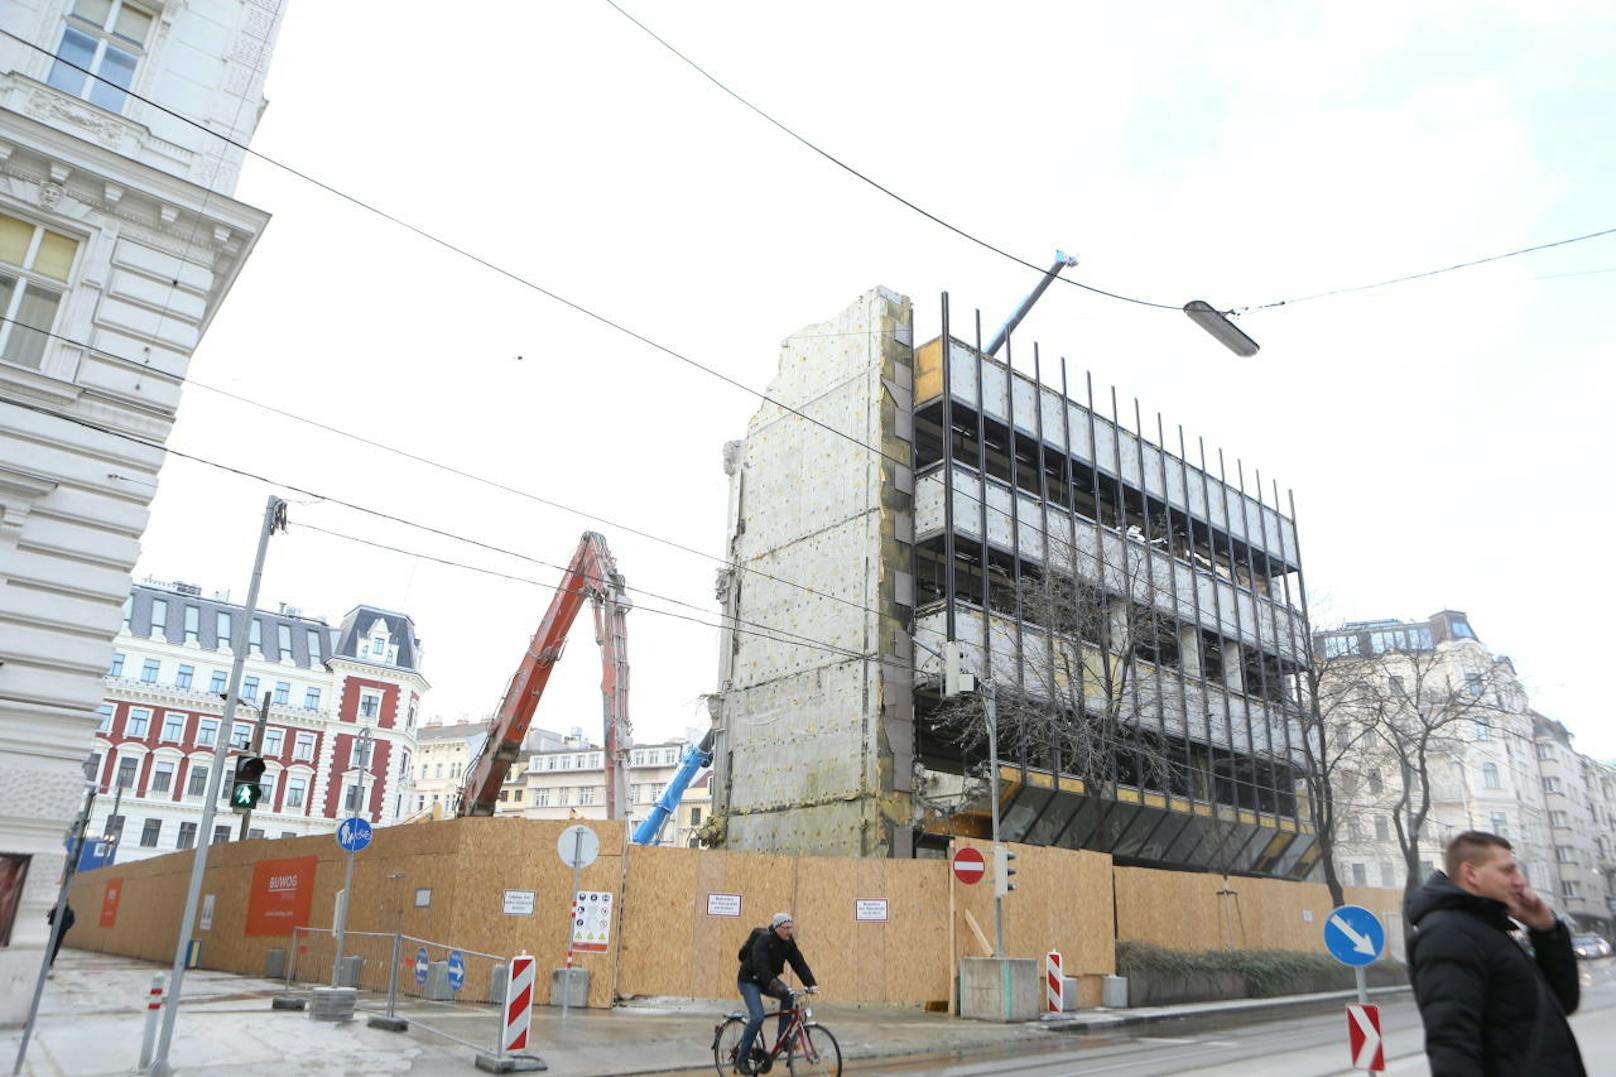 Der "Glaspalast" von Harry Glück in der Wiener Innenstadt wird abgerissen. Bald steht von dem einstigen Rechenzentrum der Stadt Wien nichts mehr.
